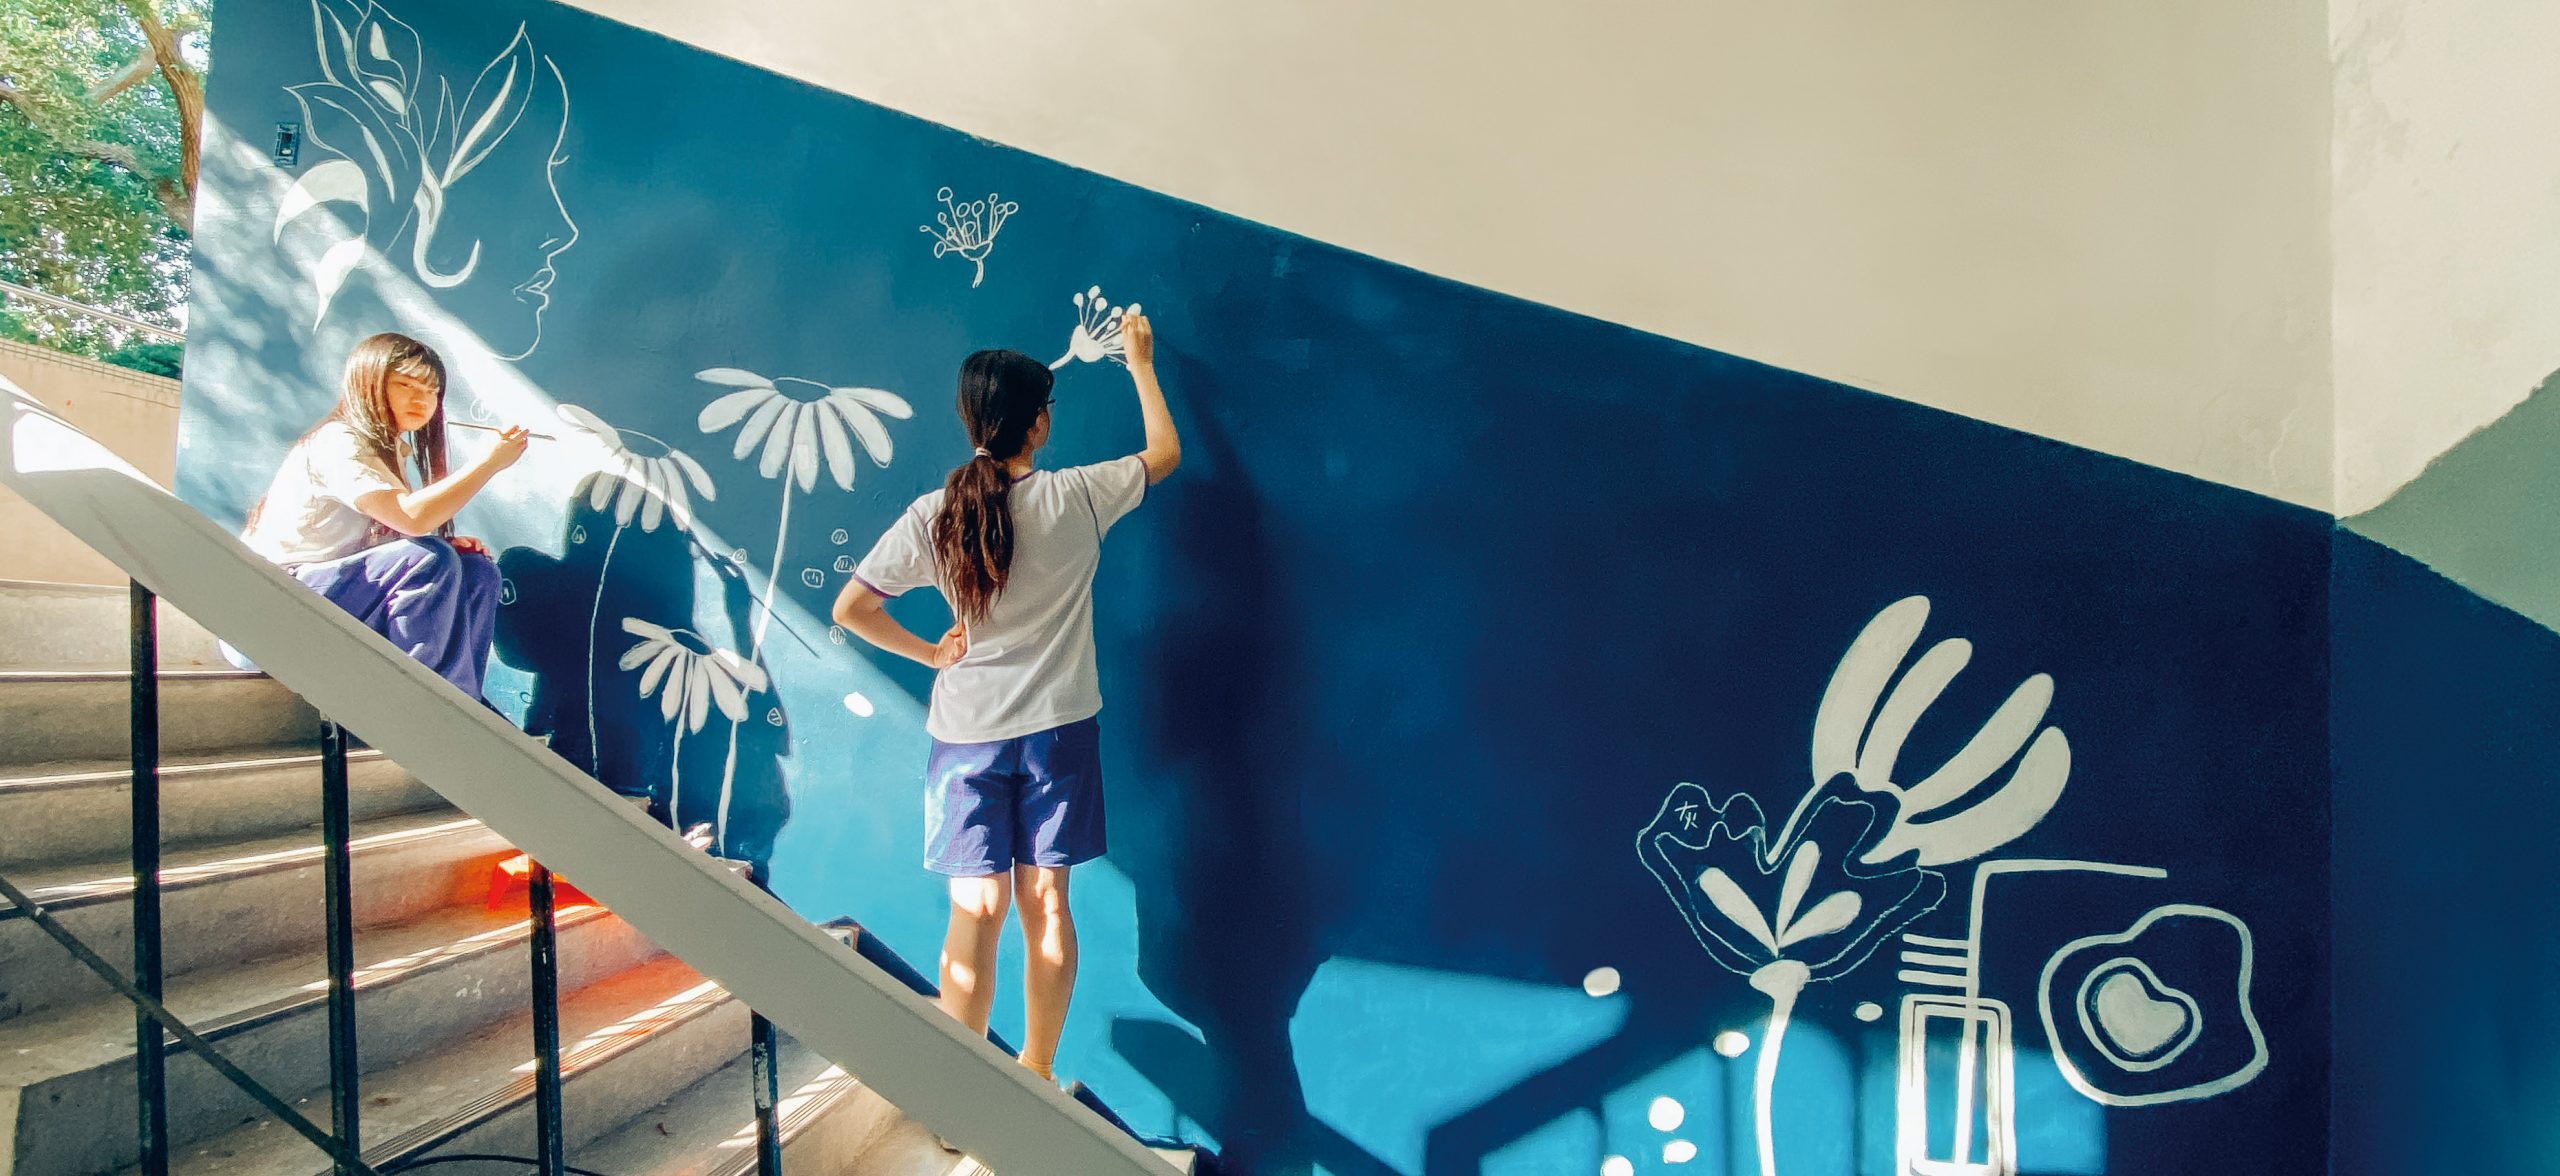 兩位學生在藍色油漆牆面上做白色塗鴉彩繪